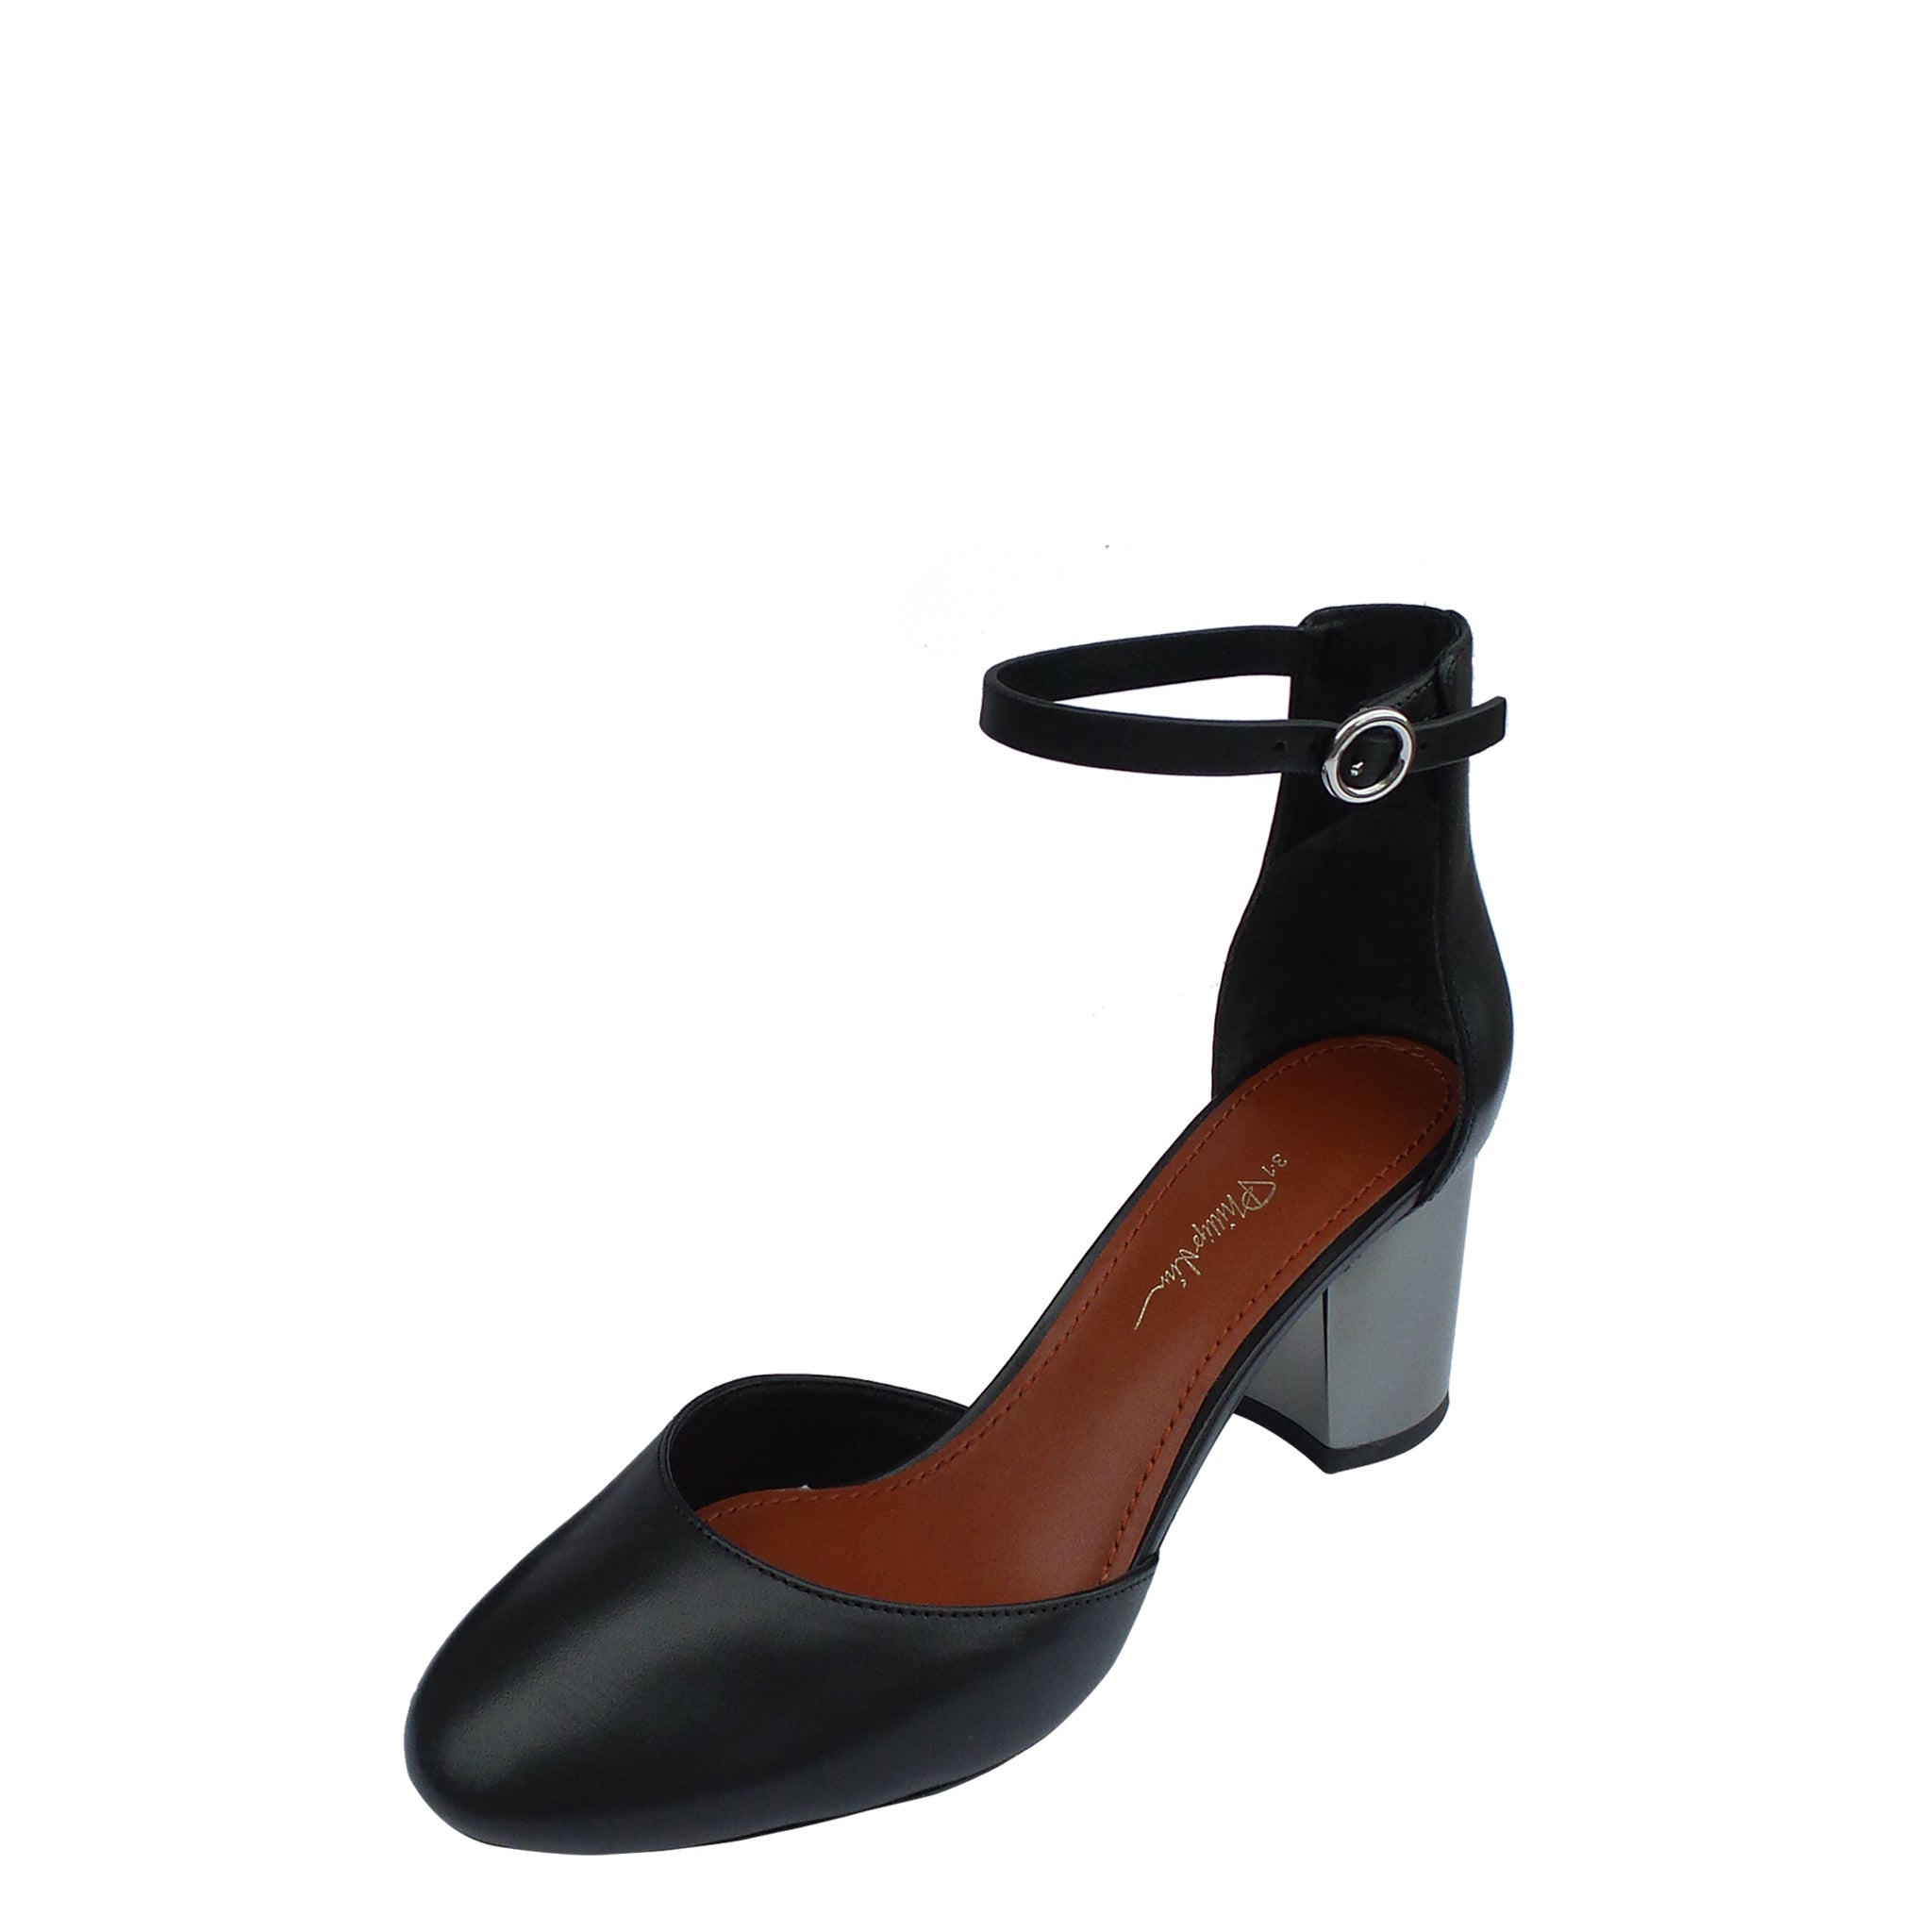 black block heel pumps